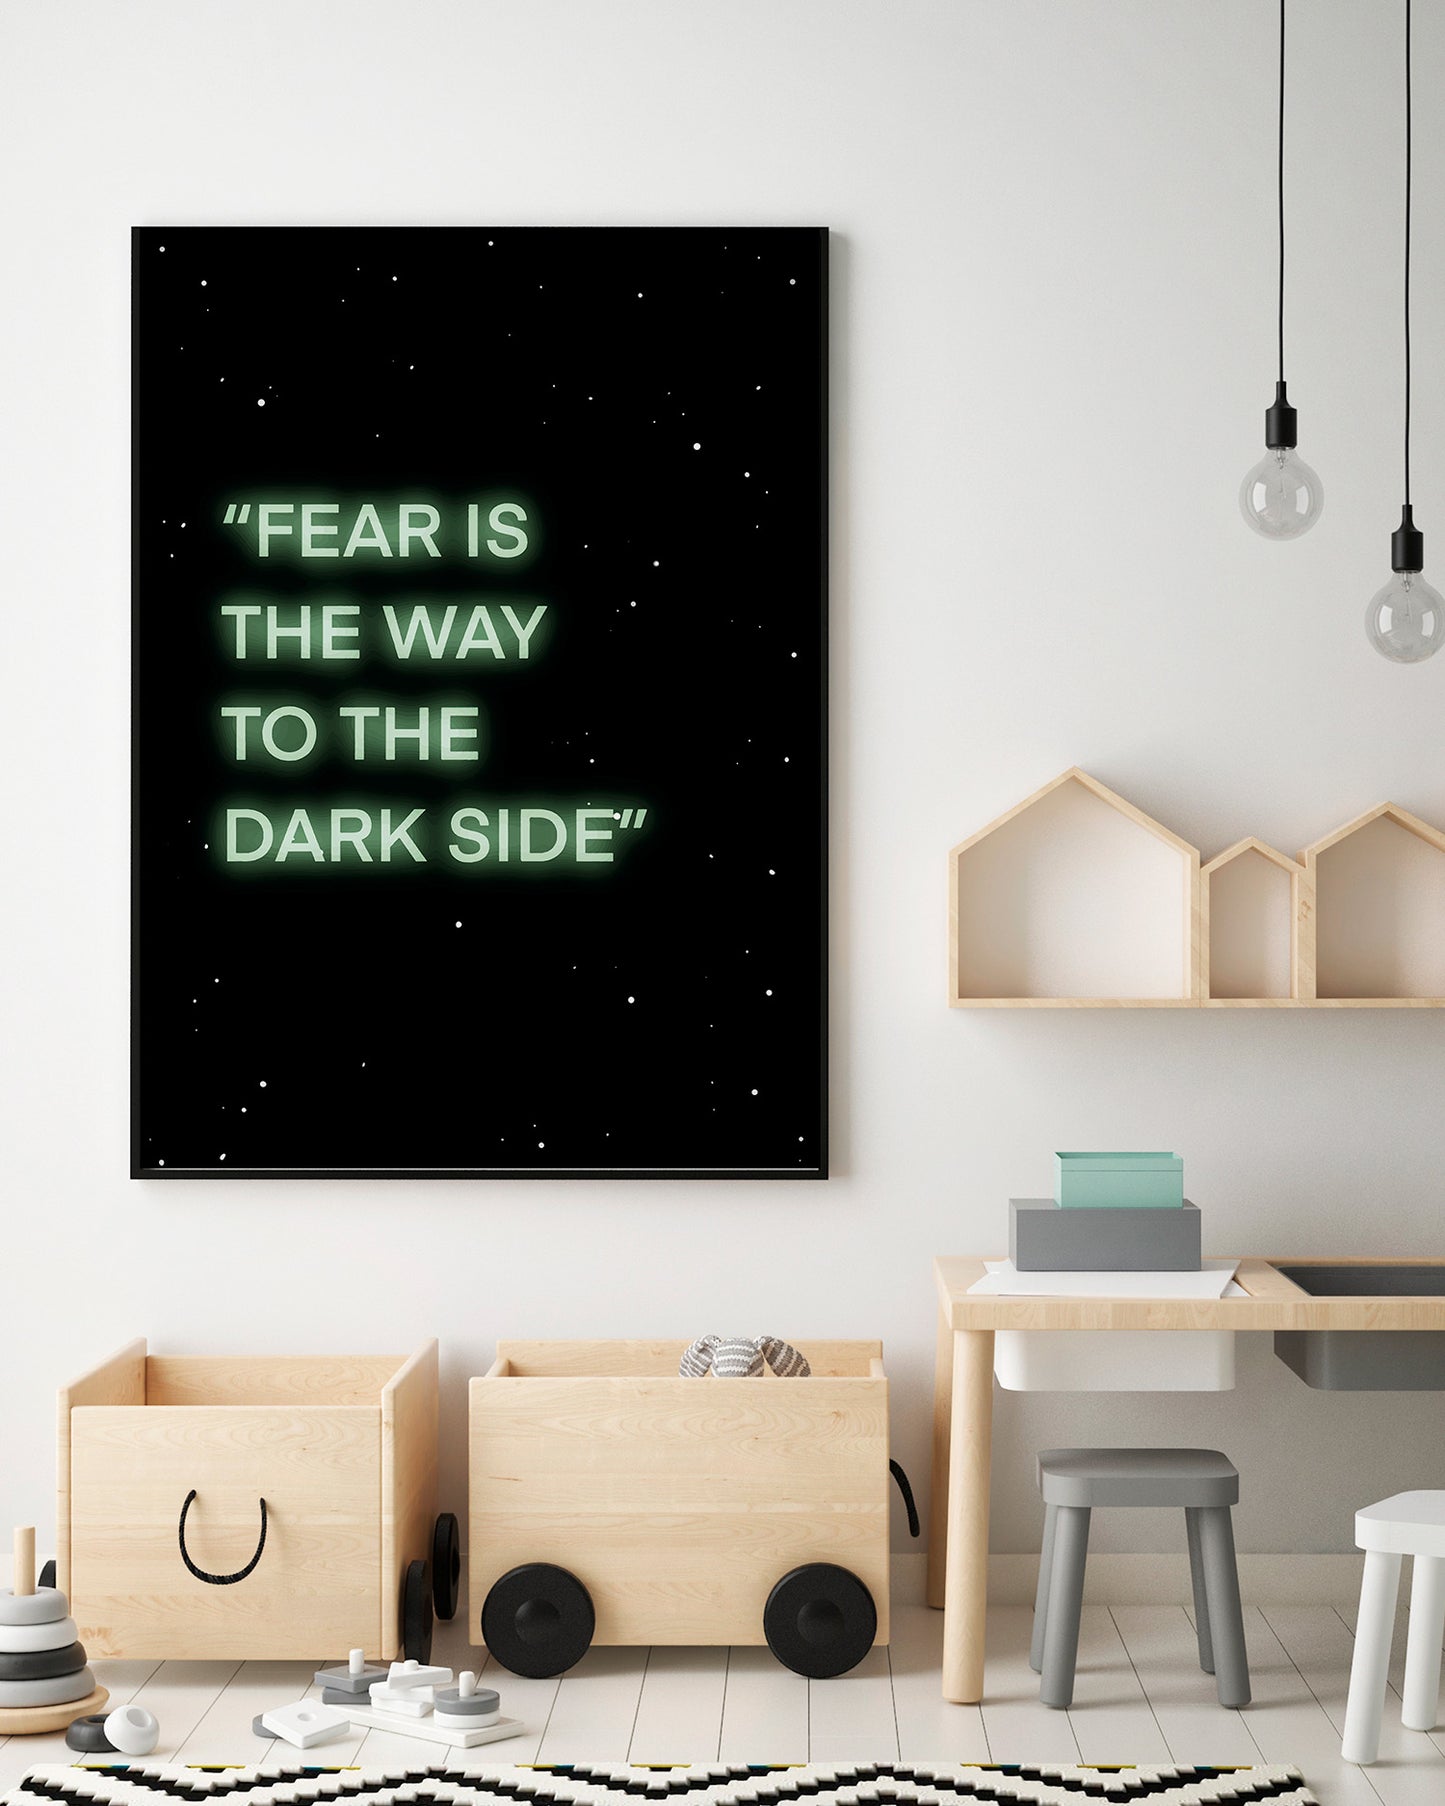 Fear is the way - @rubdubois